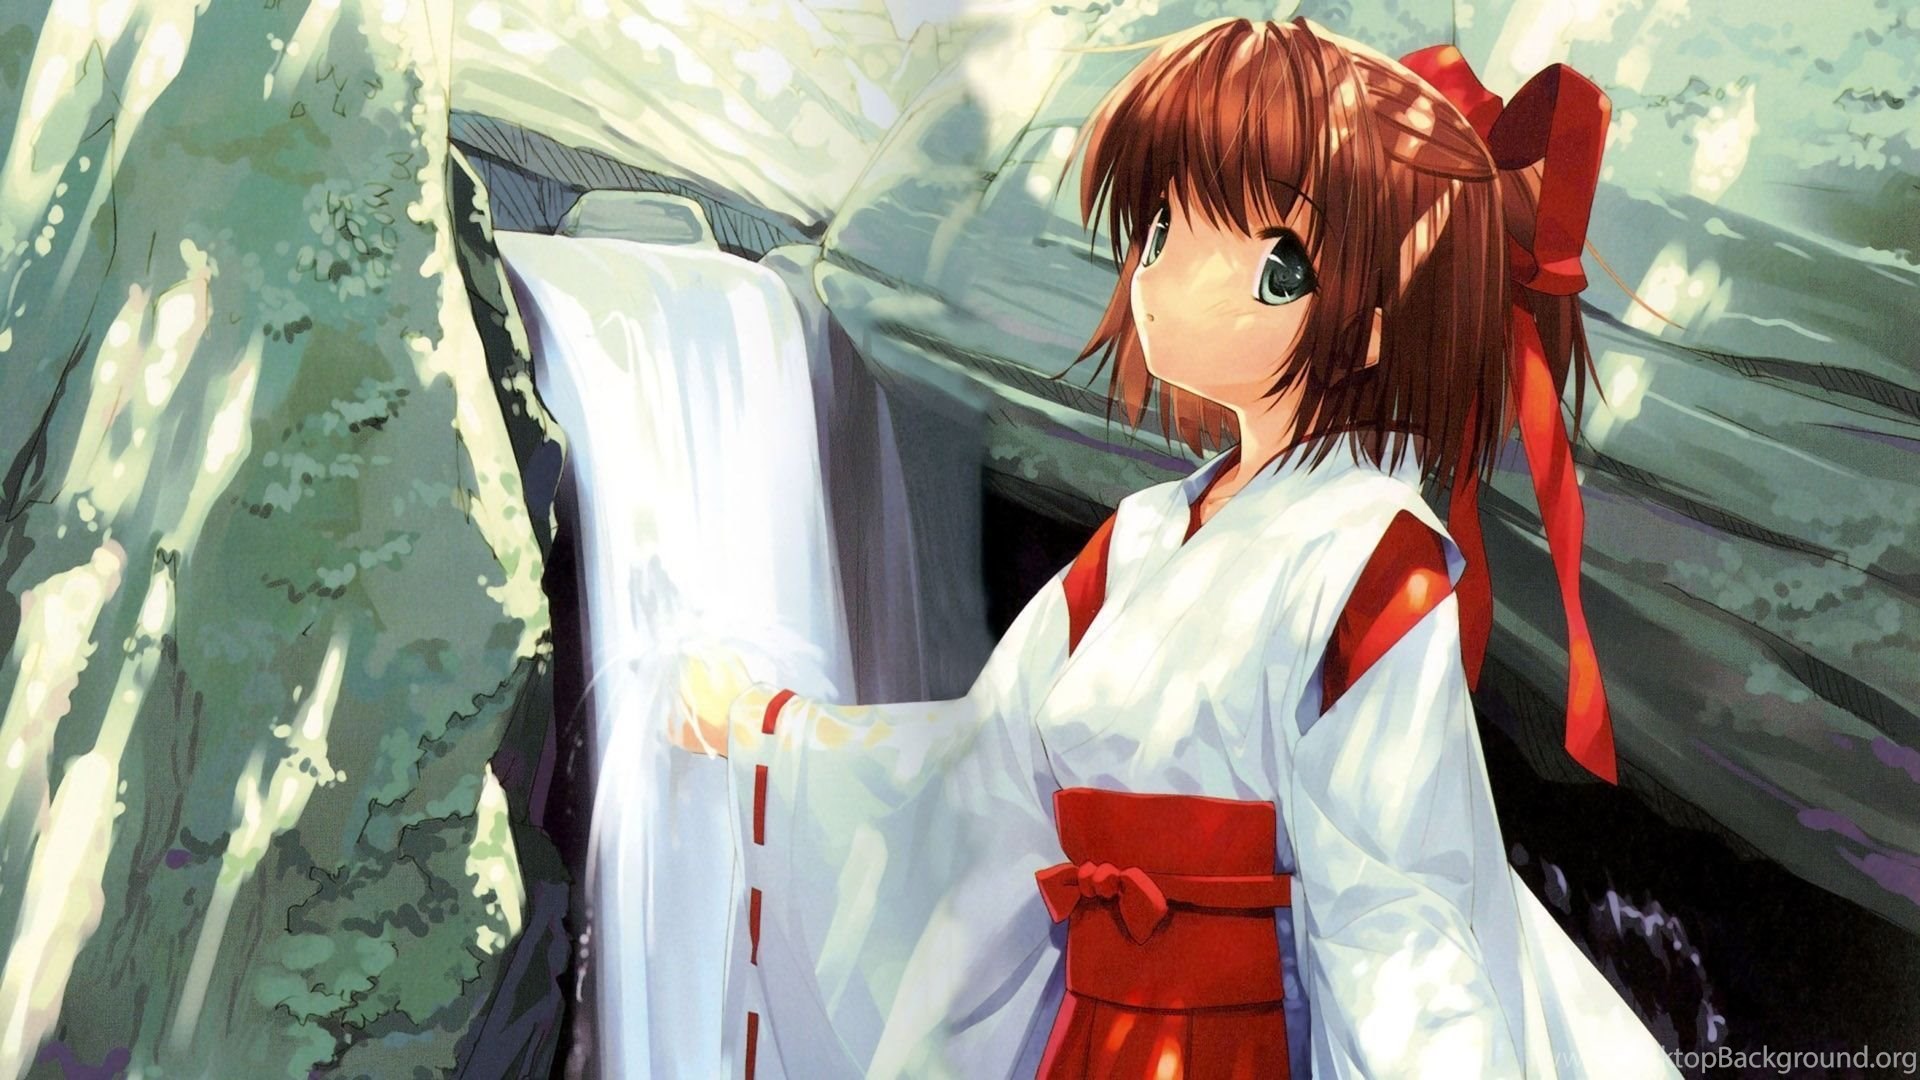 Anime Shrine Maiden Girls , HD Wallpaper & Backgrounds